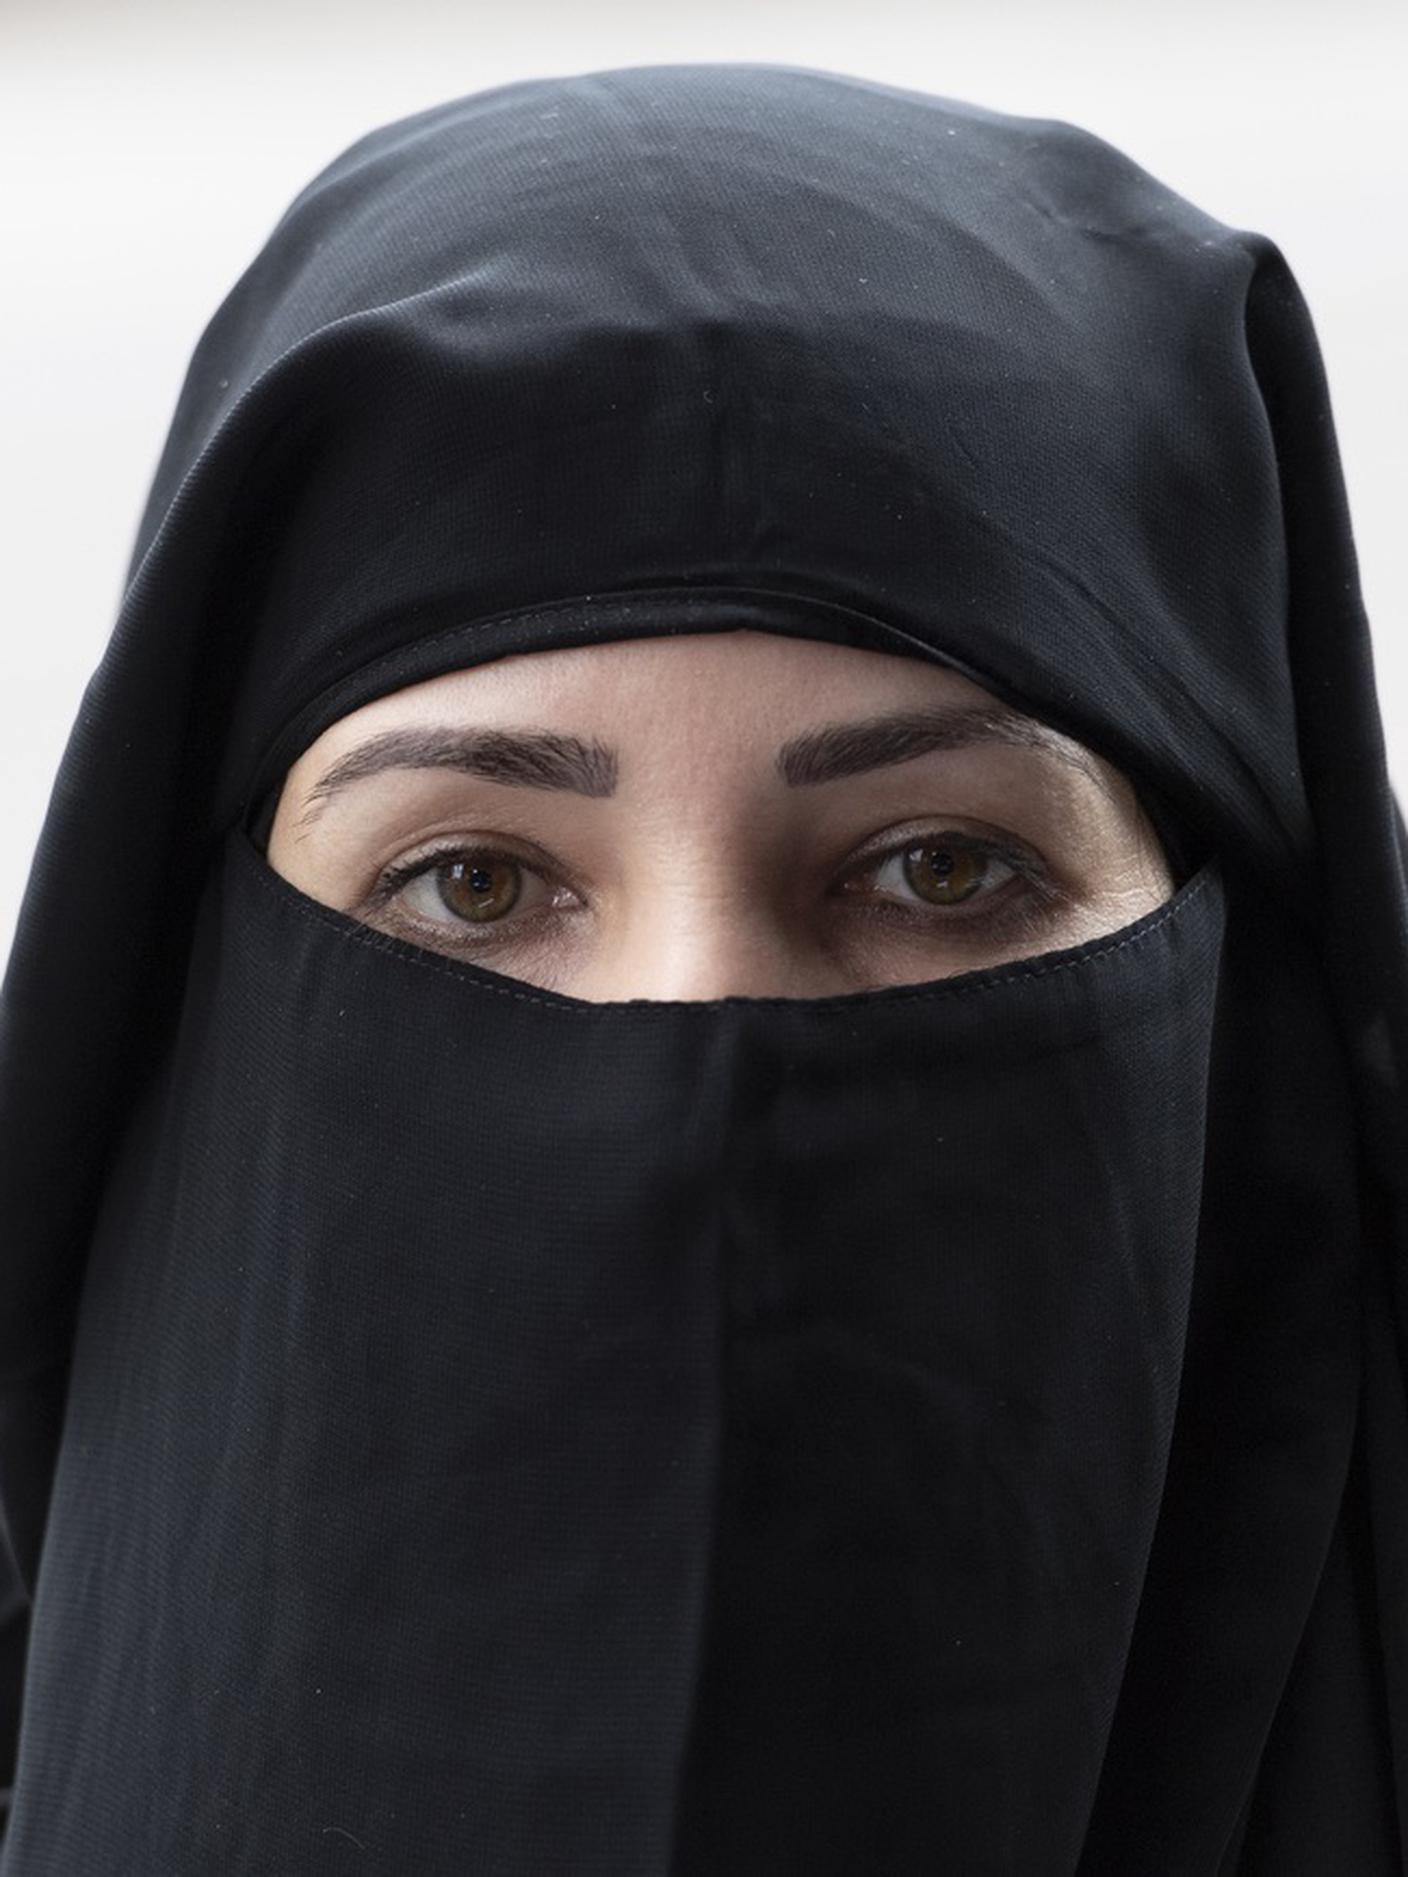 Nella foto, un "niqab"